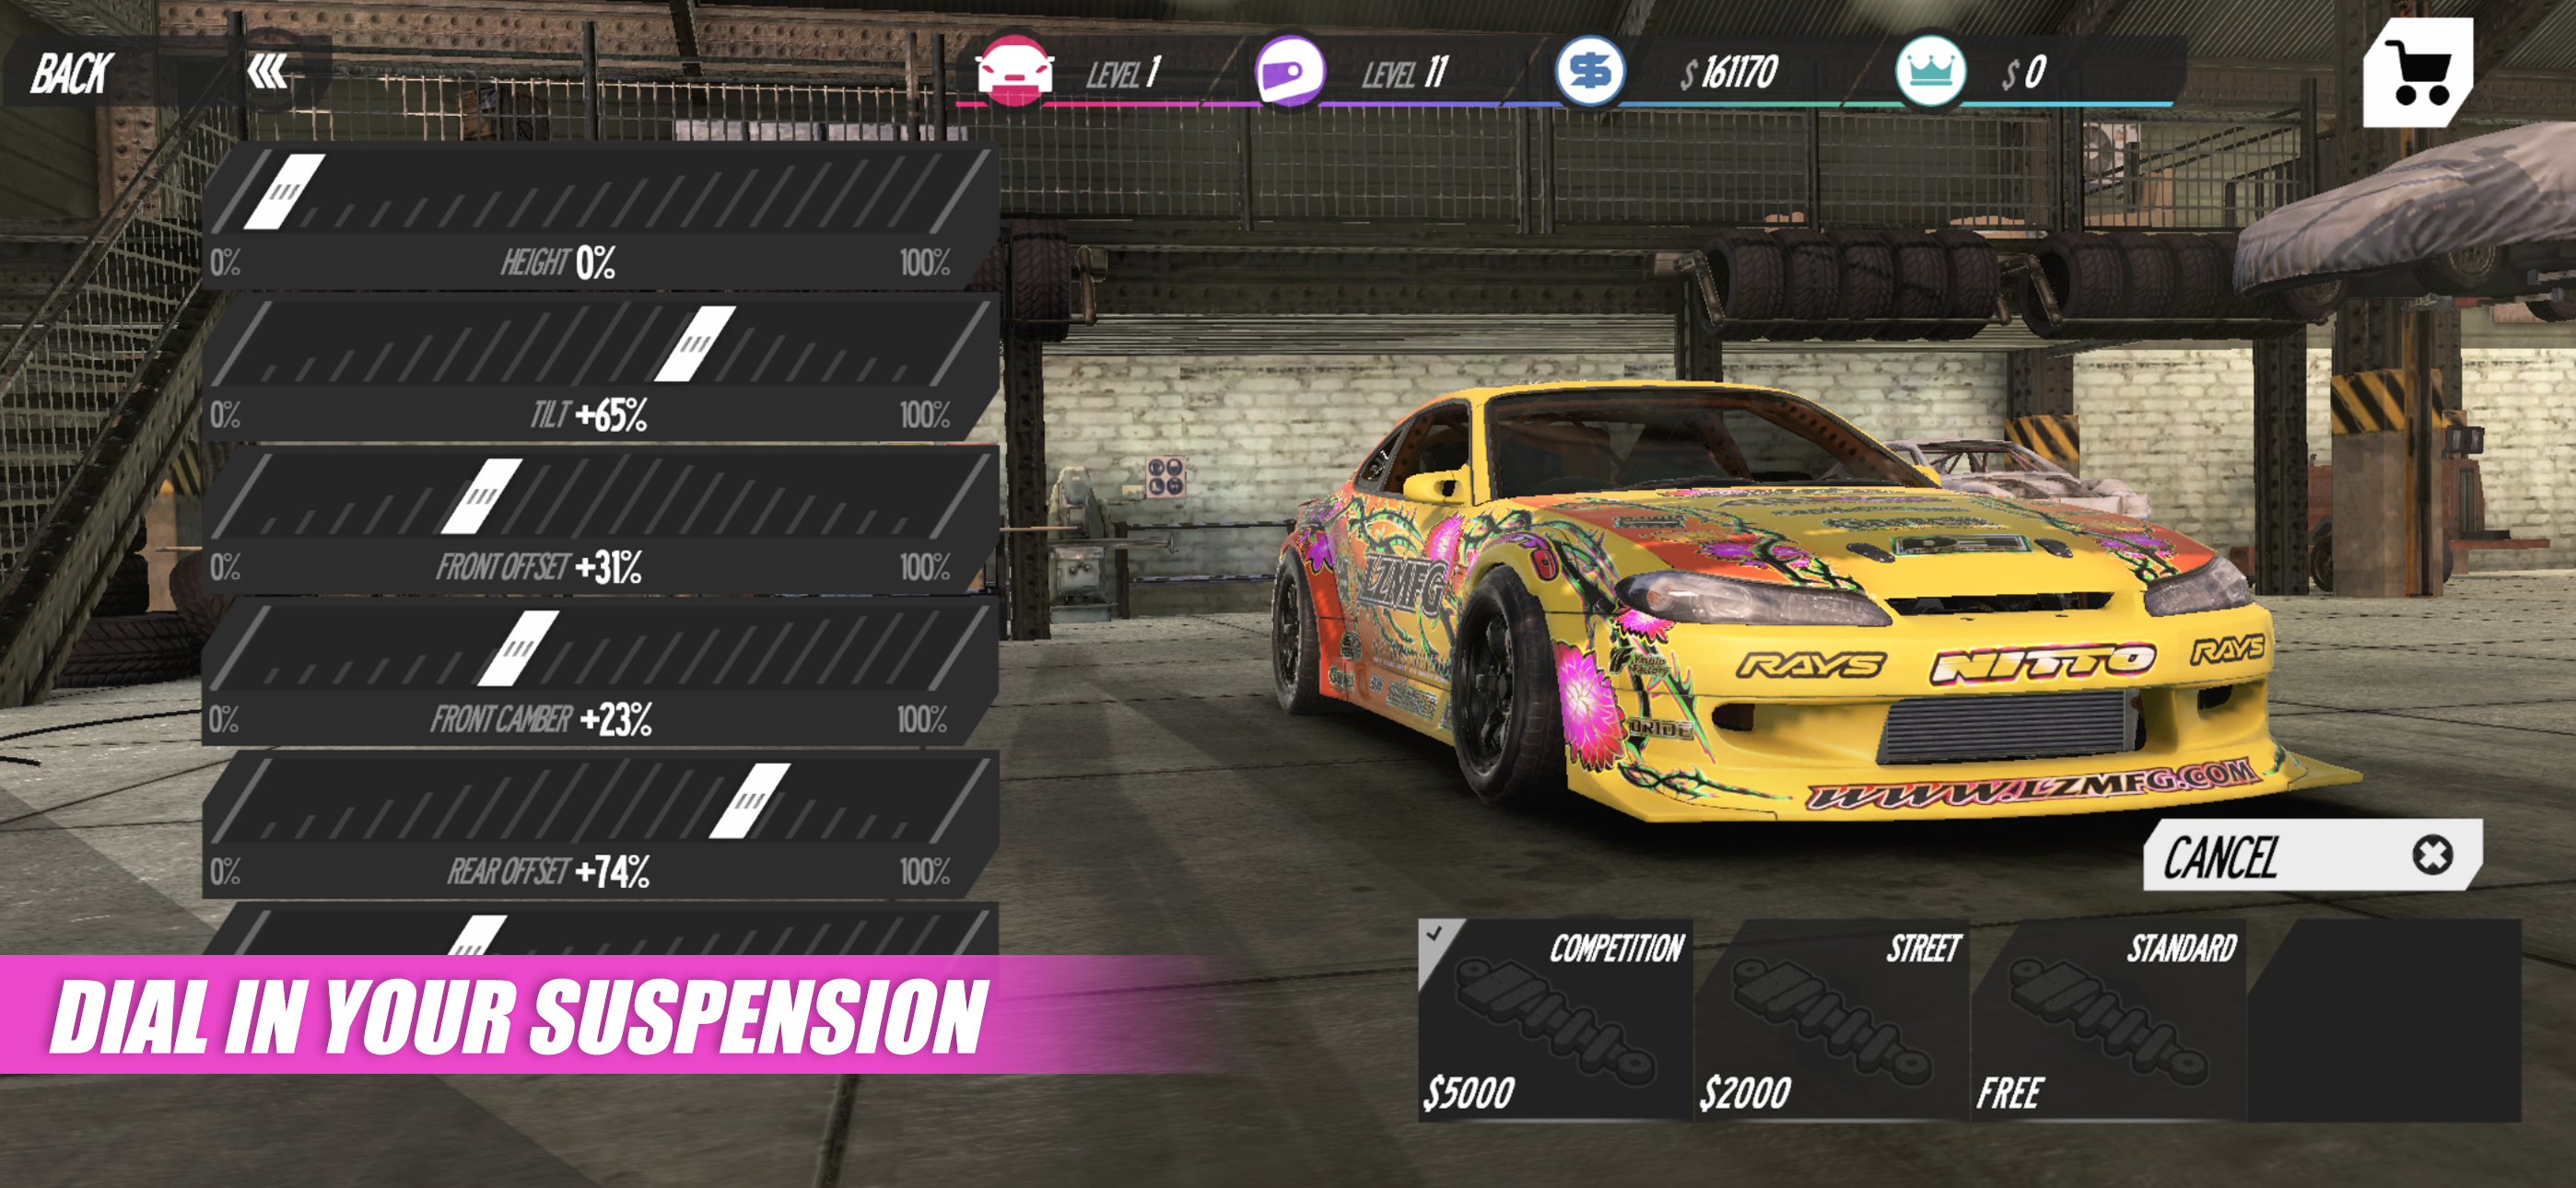 Drift Runner screenshot game